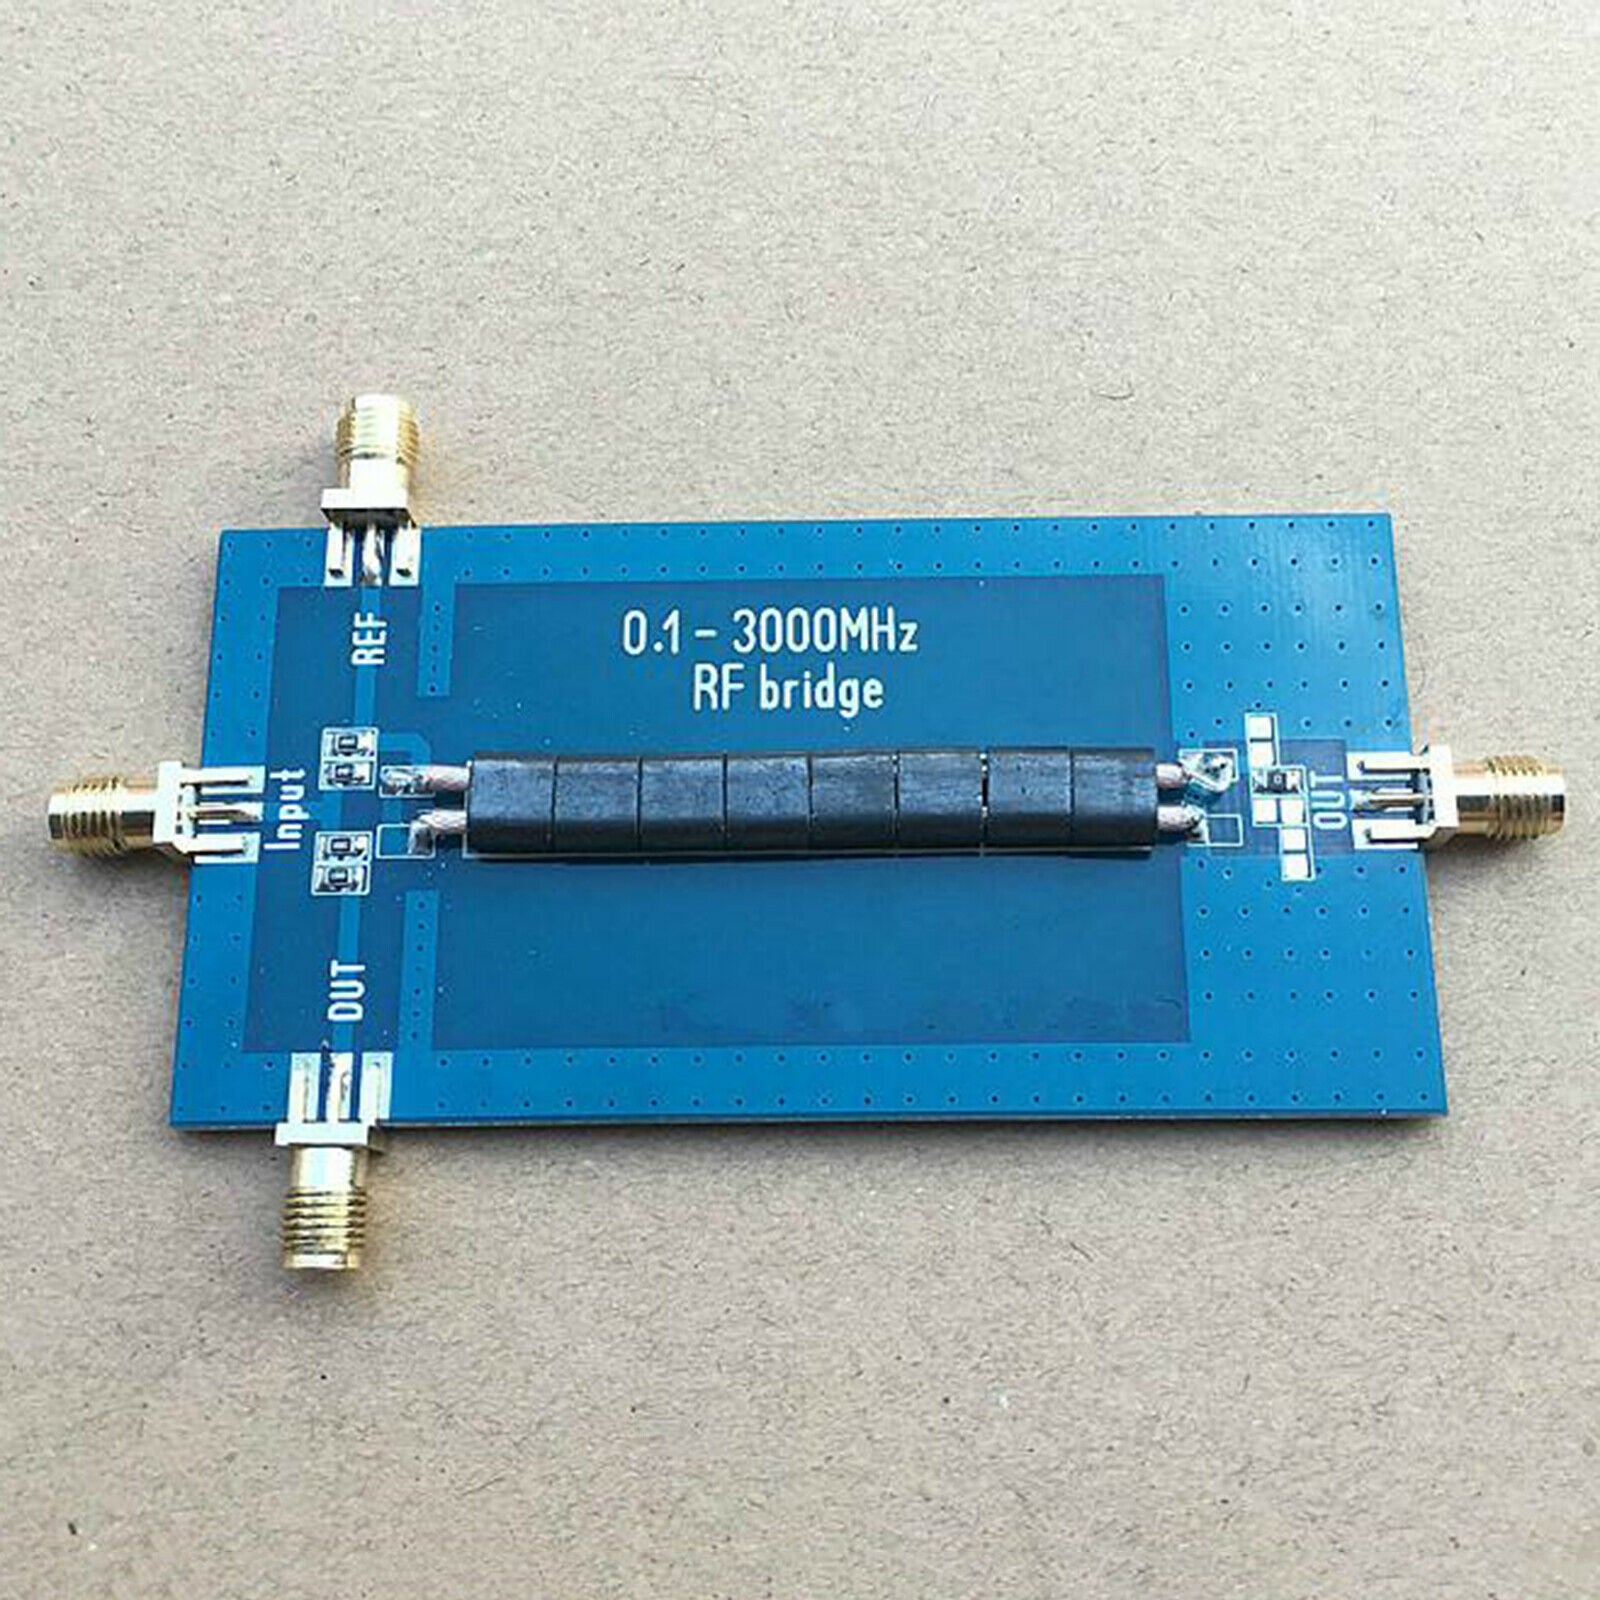 0.1-3000 MHz RF SWR Reflection Bridge Measurement for Inductance, Capacitance